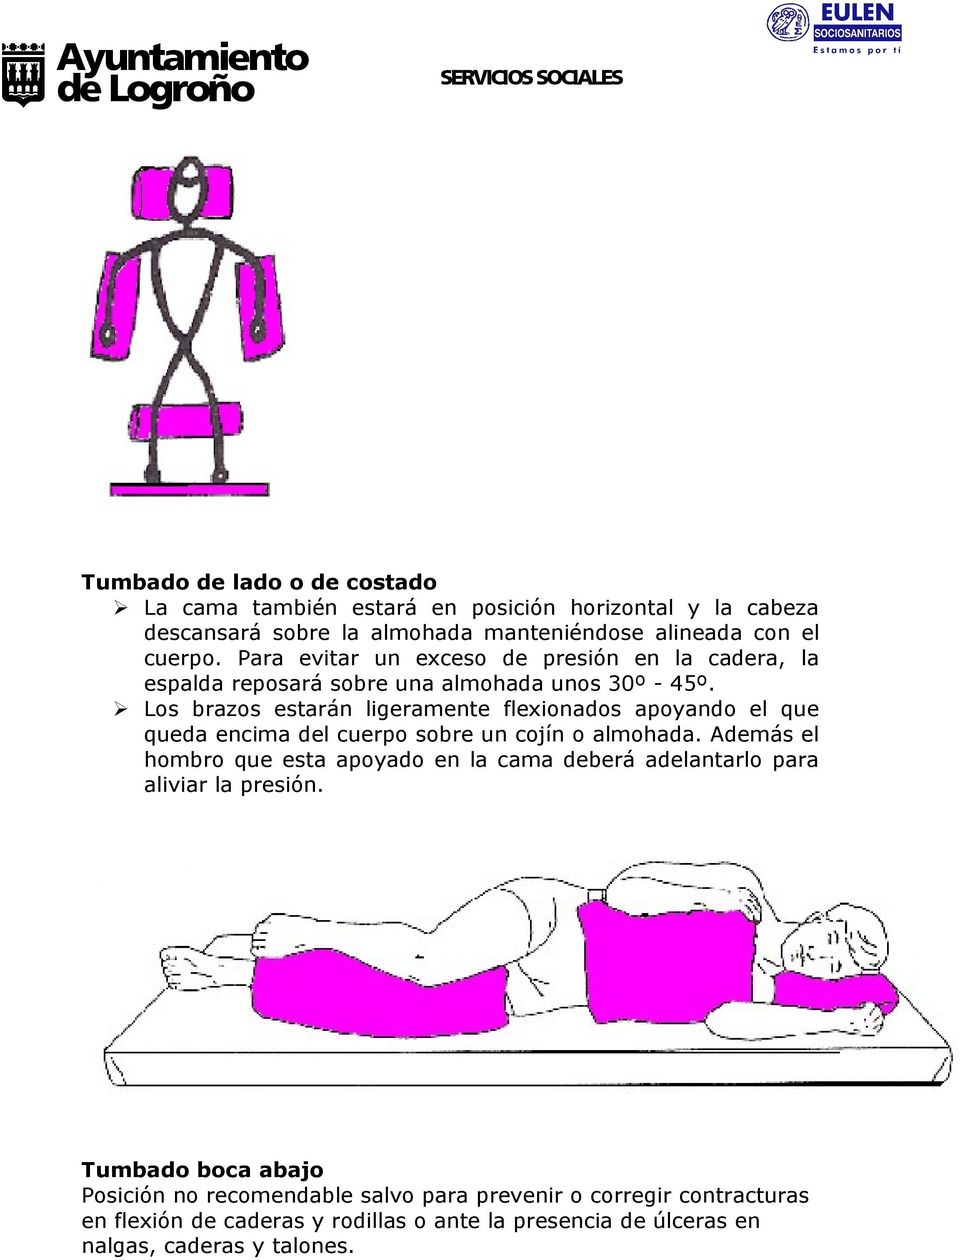 Los brazos estarán ligeramente flexionados apoyando el que queda encima del cuerpo sobre un cojín o almohada.